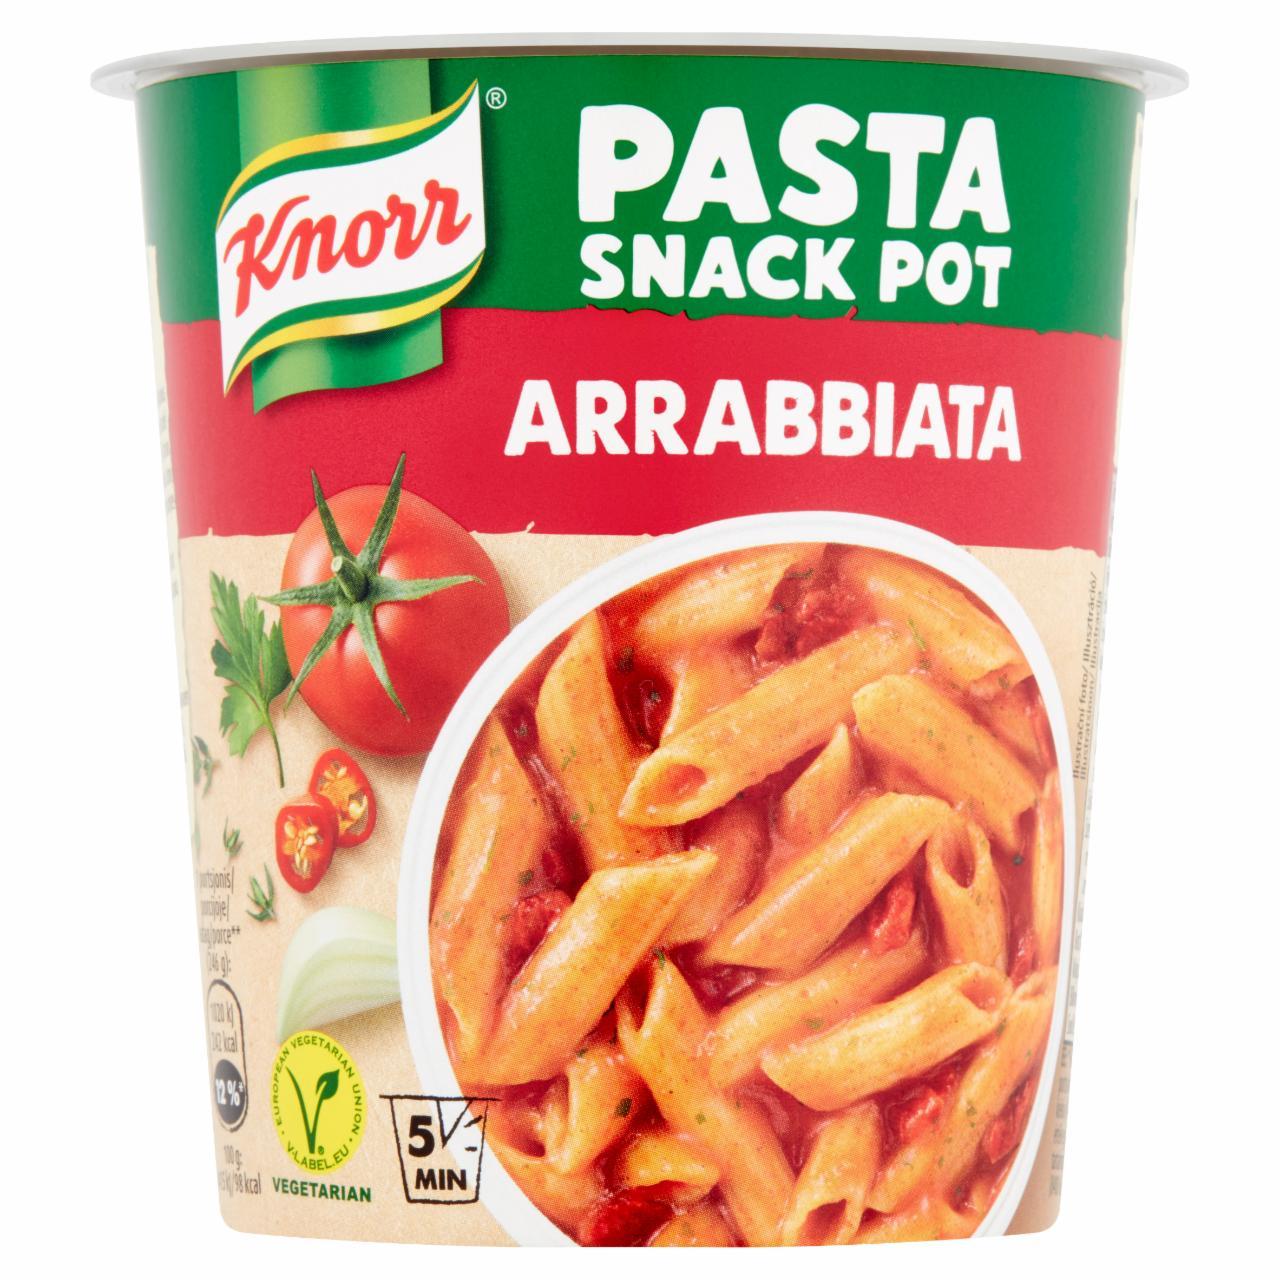 Képek - Knorr Snack tészta csípős paradicsomos Arrabbiata szósszal 66 g